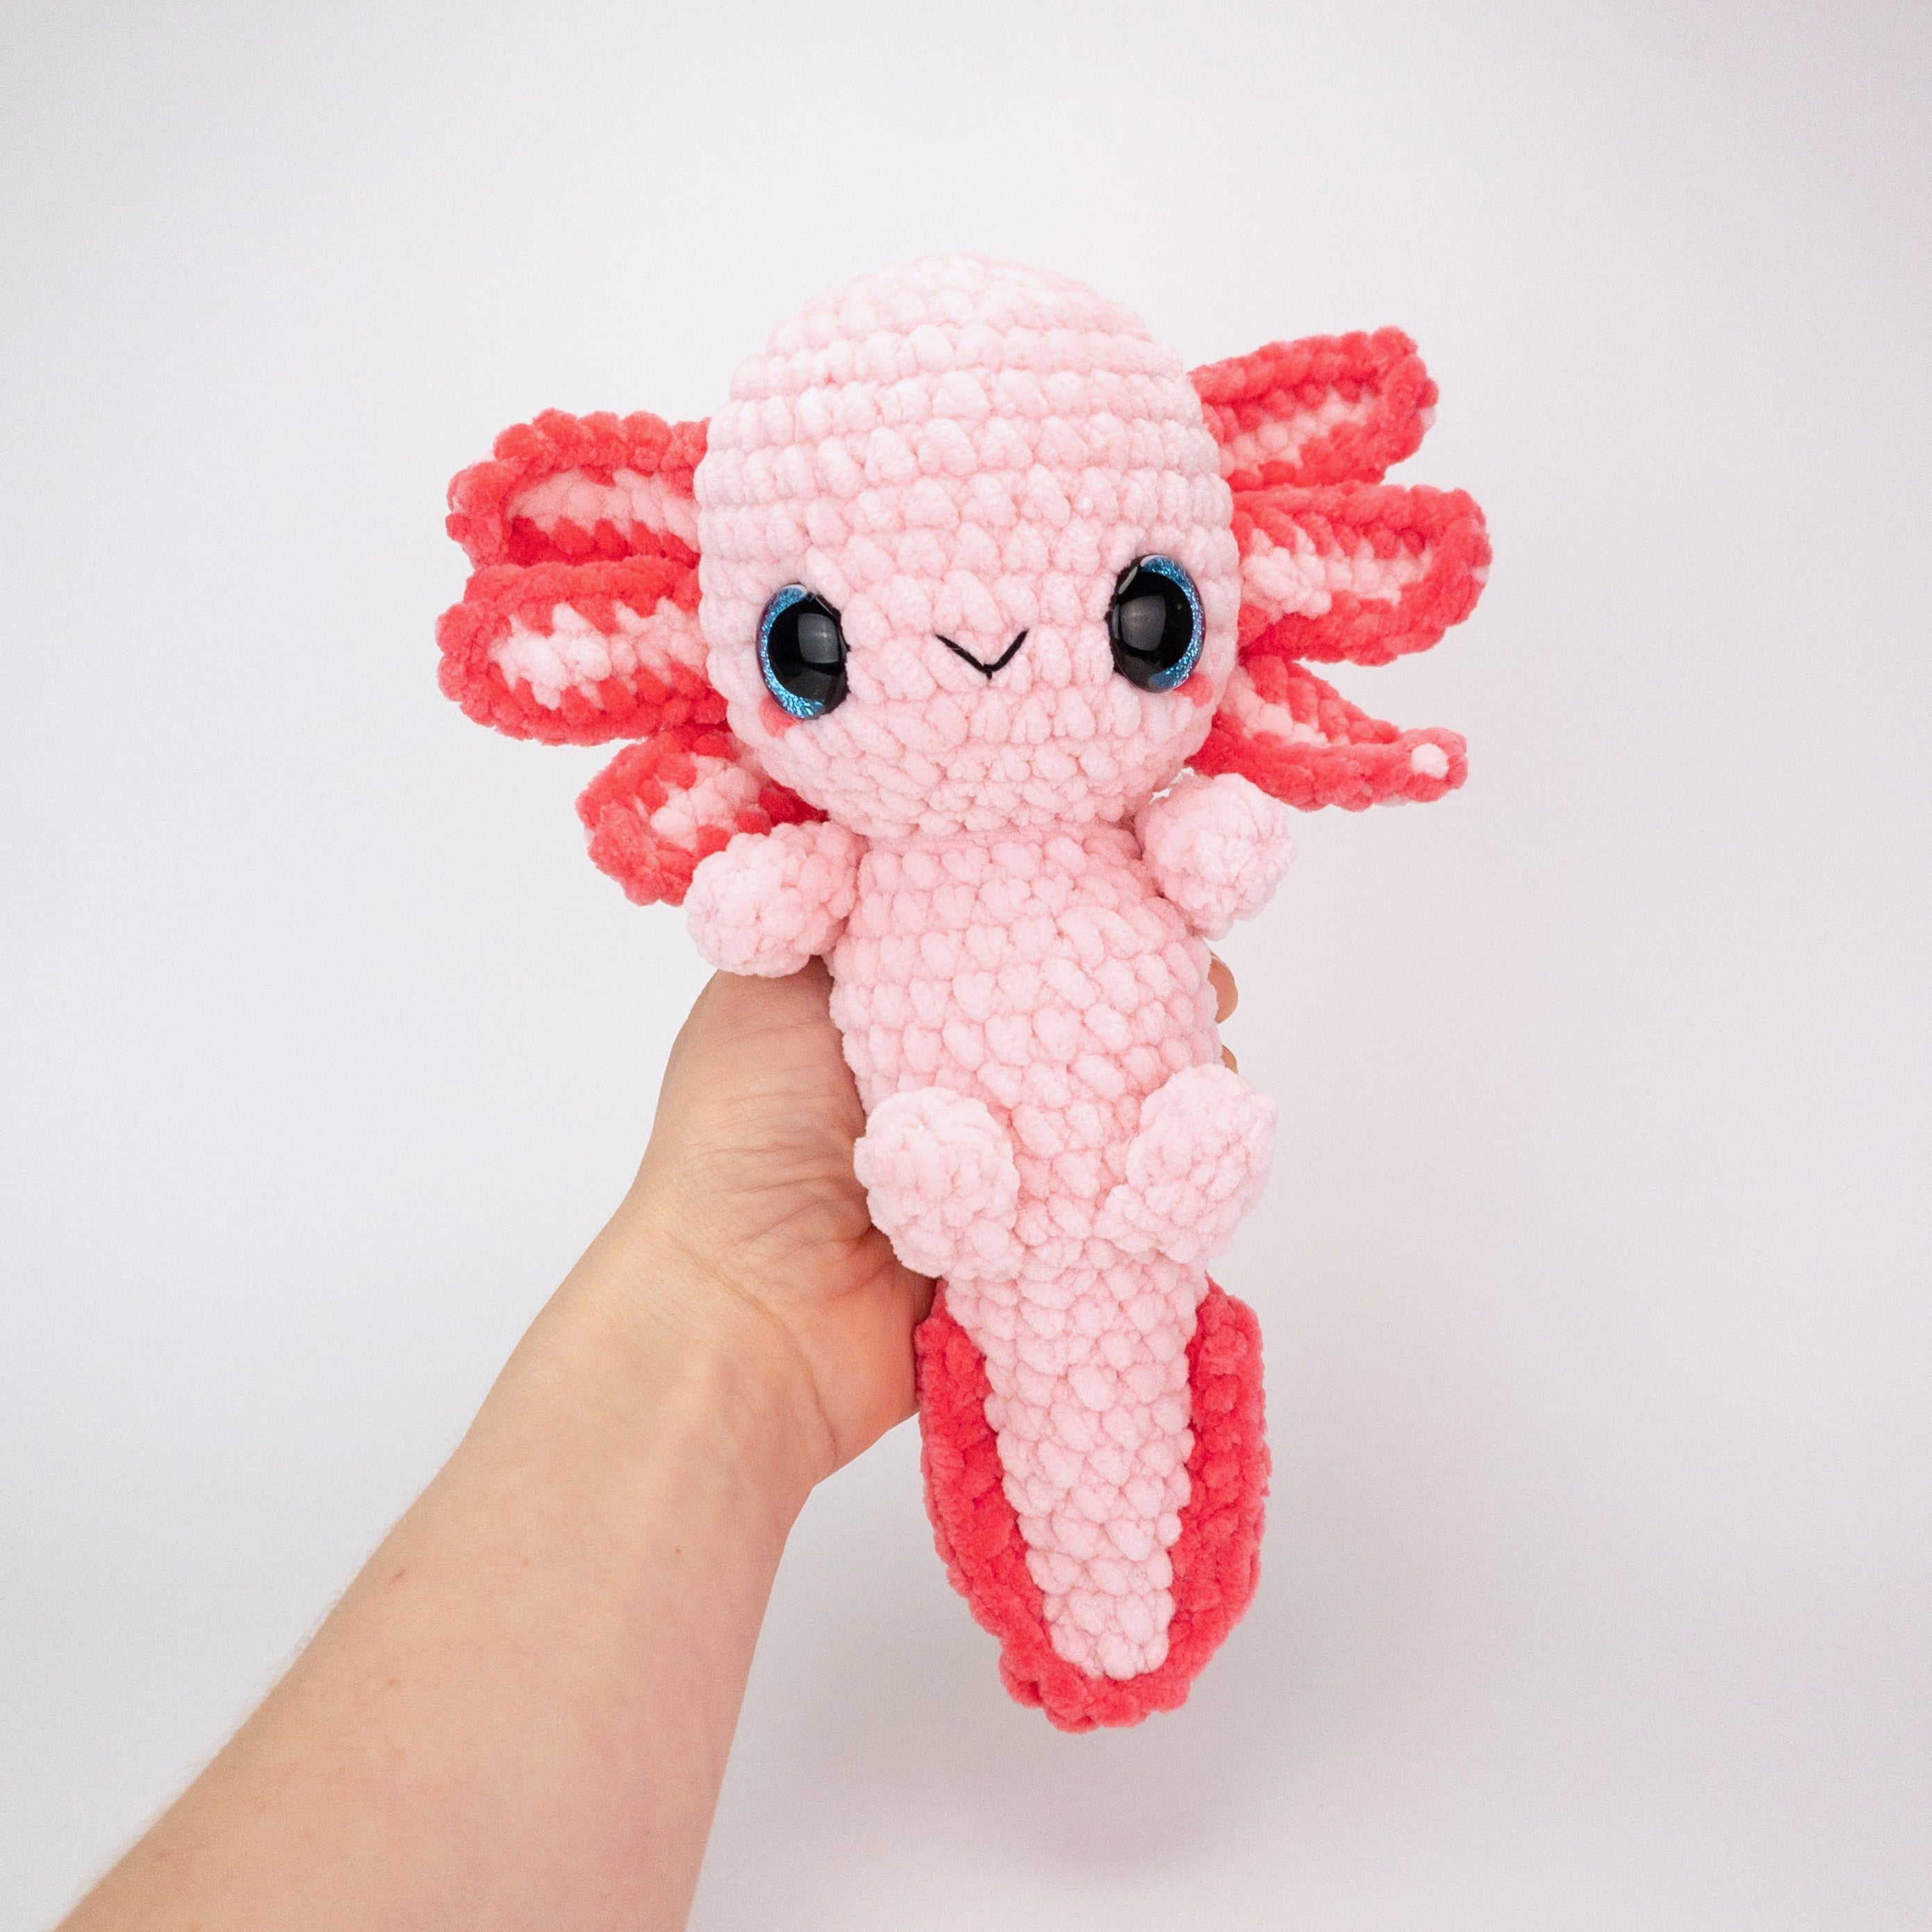 Crochet Axolotl Tutorial: Assembly 